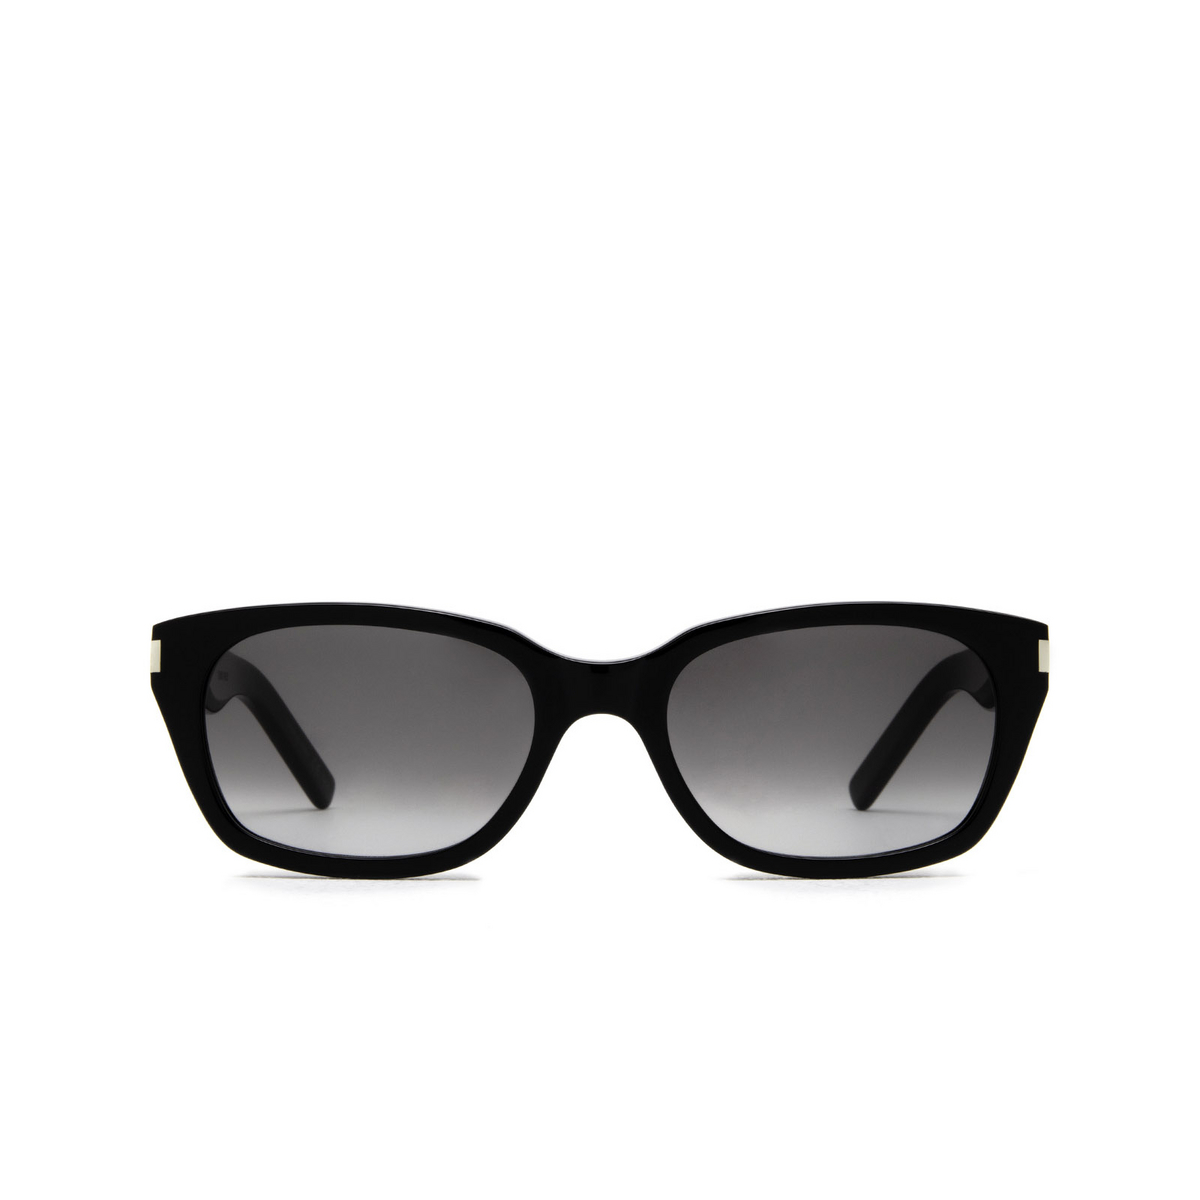 Saint Laurent SL 522 Sunglasses 001 Black - front view